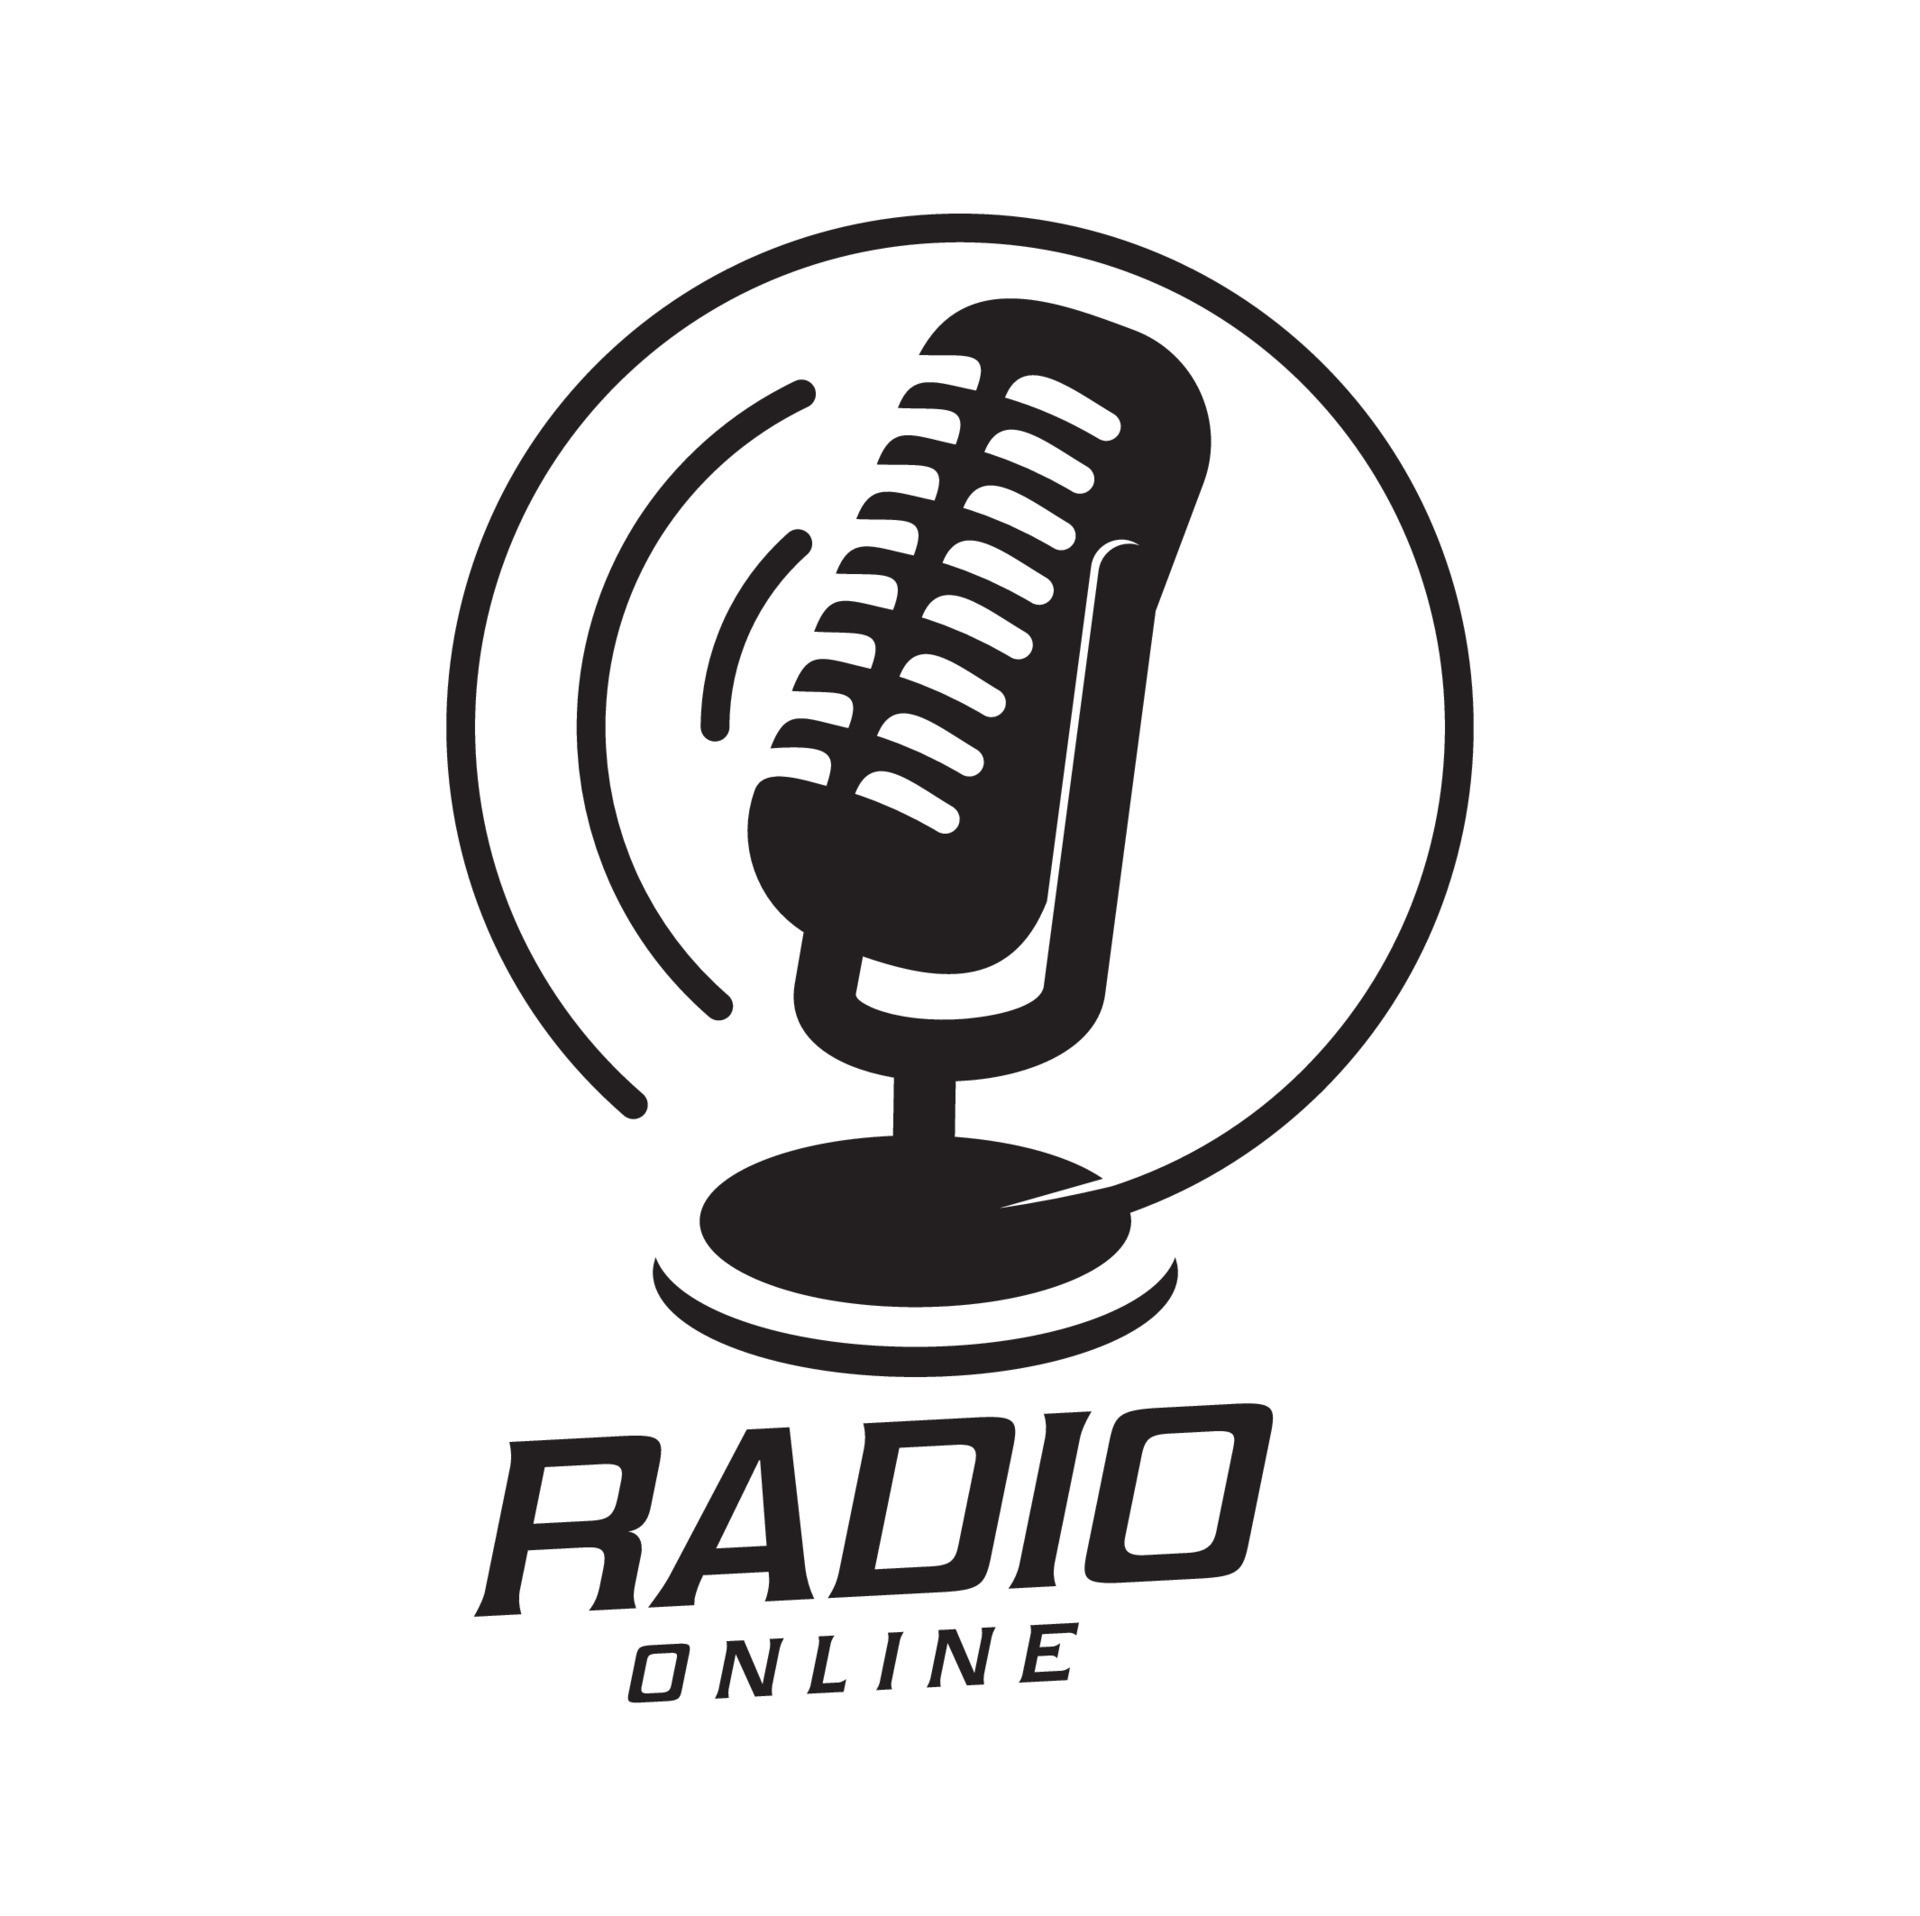 online radio station vintage icon or symbol vector